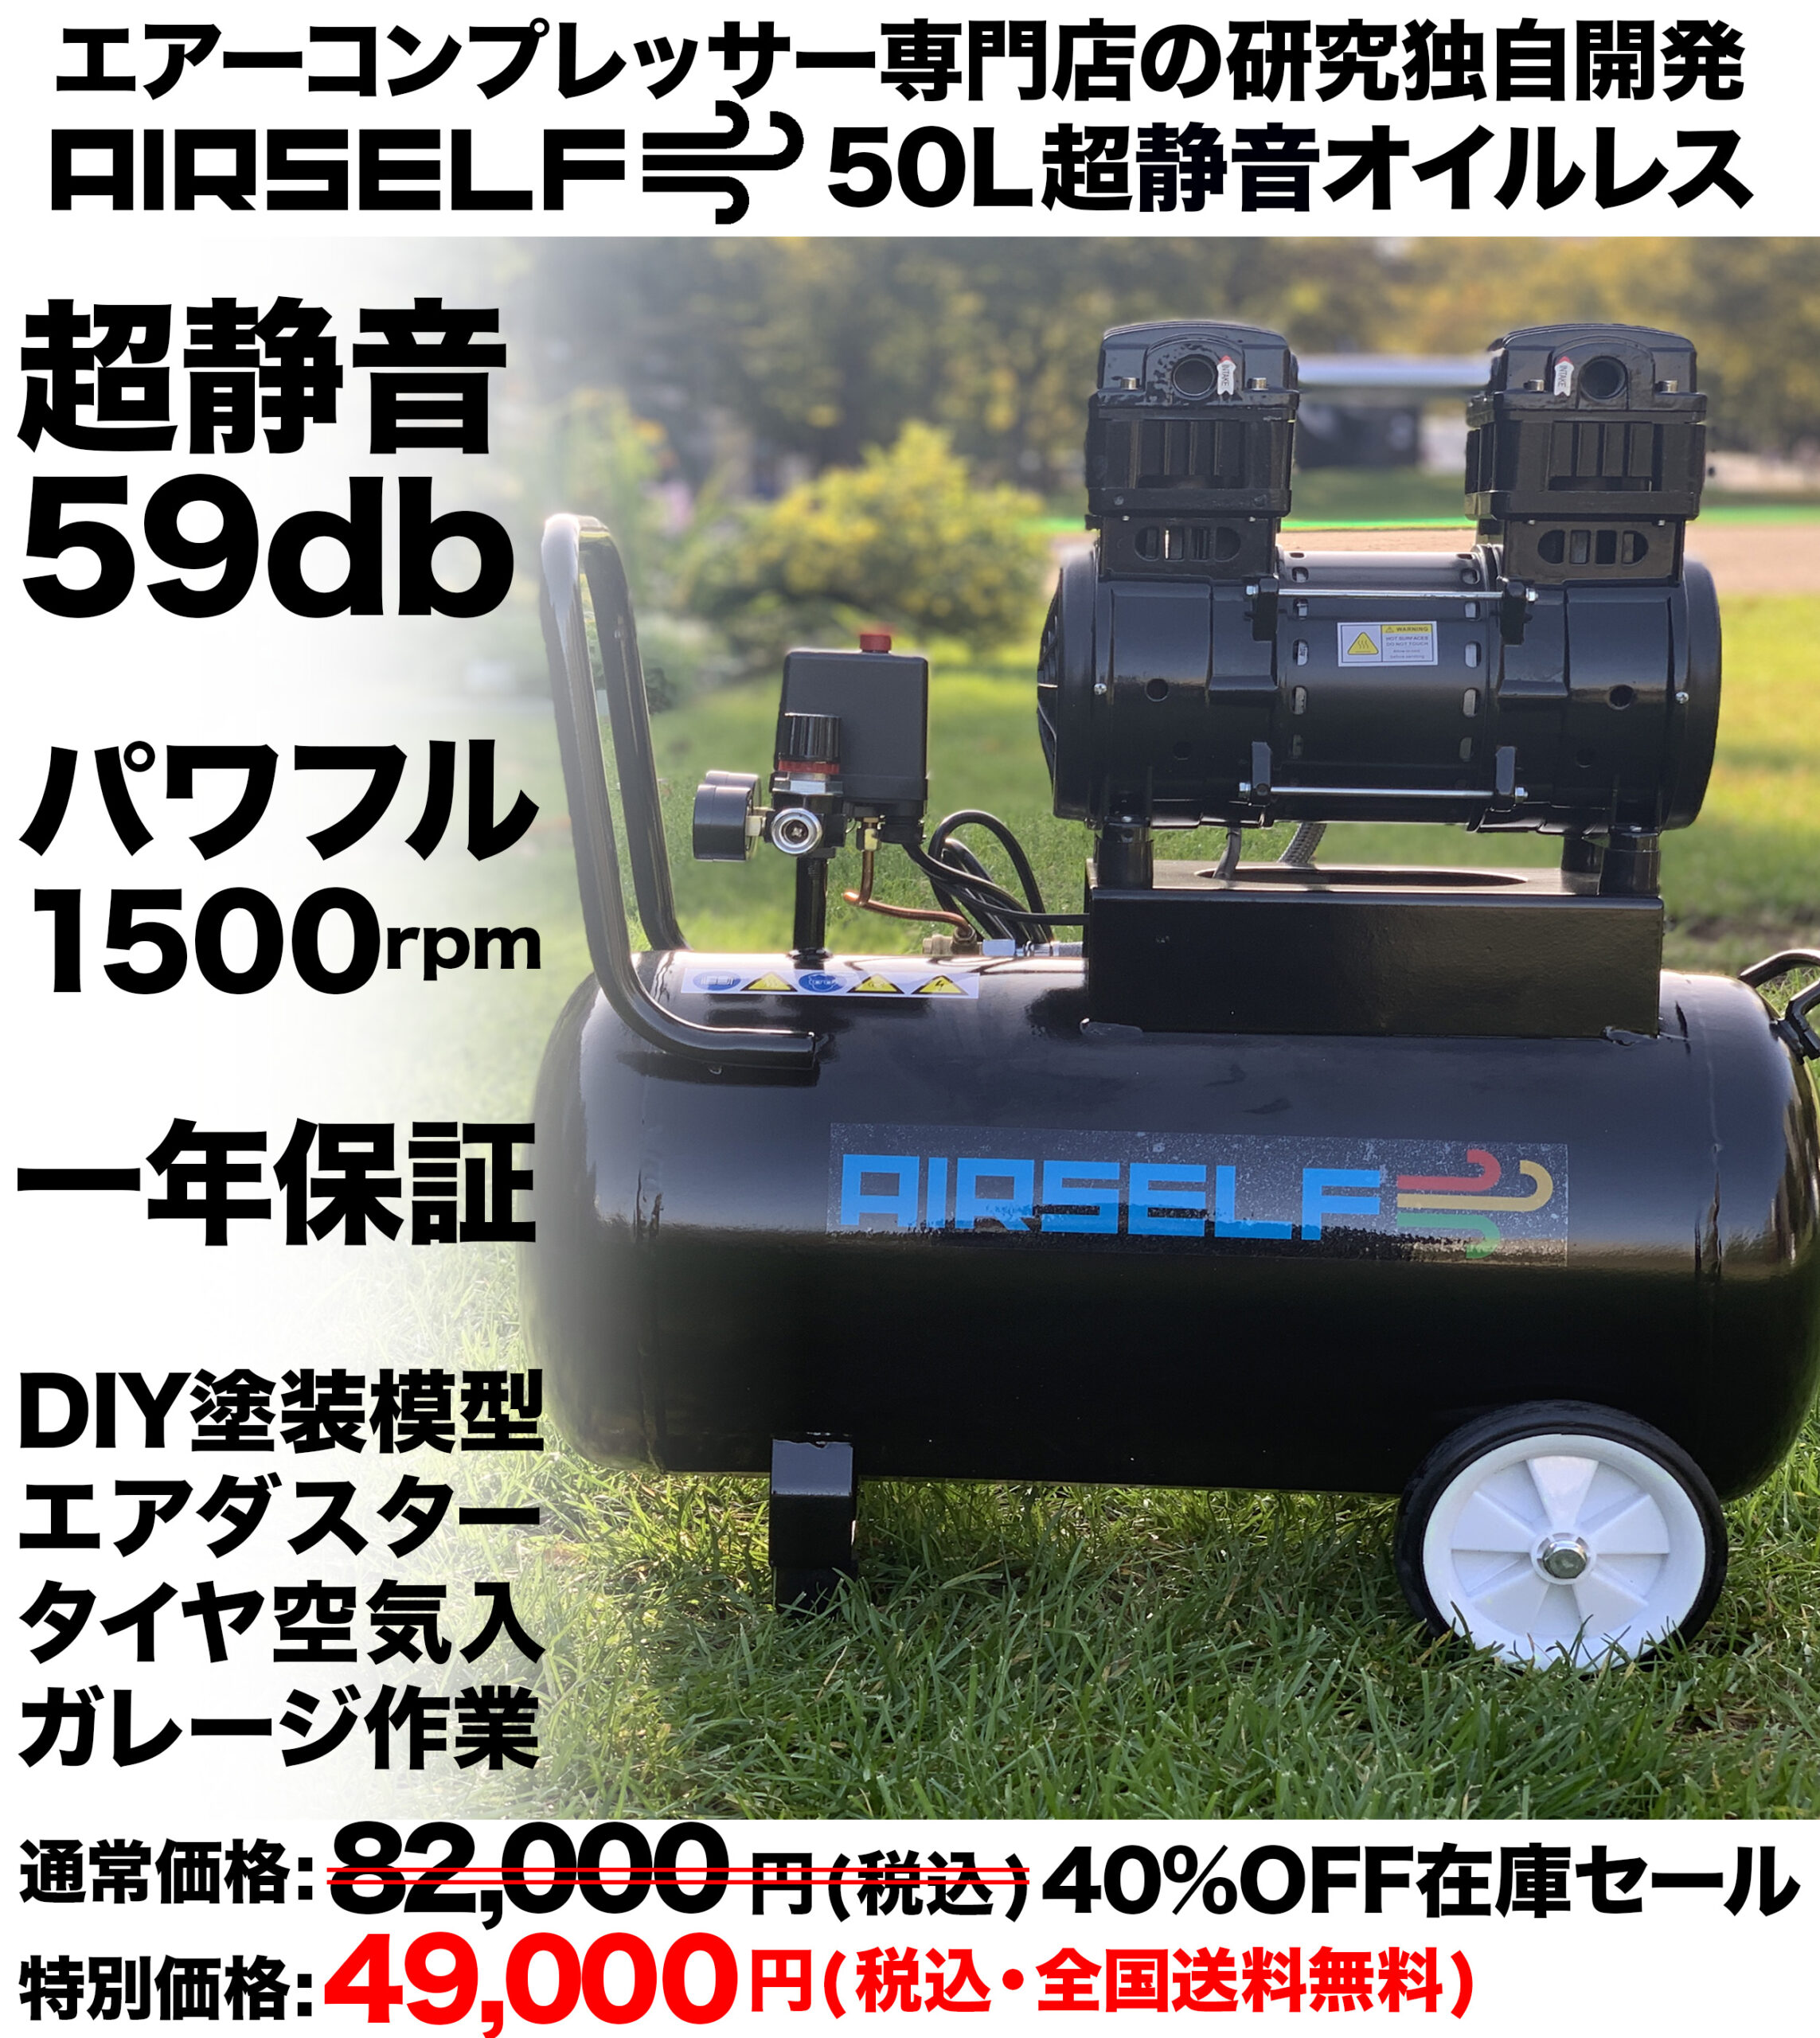 エアーコンプレッサー50L静音オイルレス型100V【AIRSELF】カラー